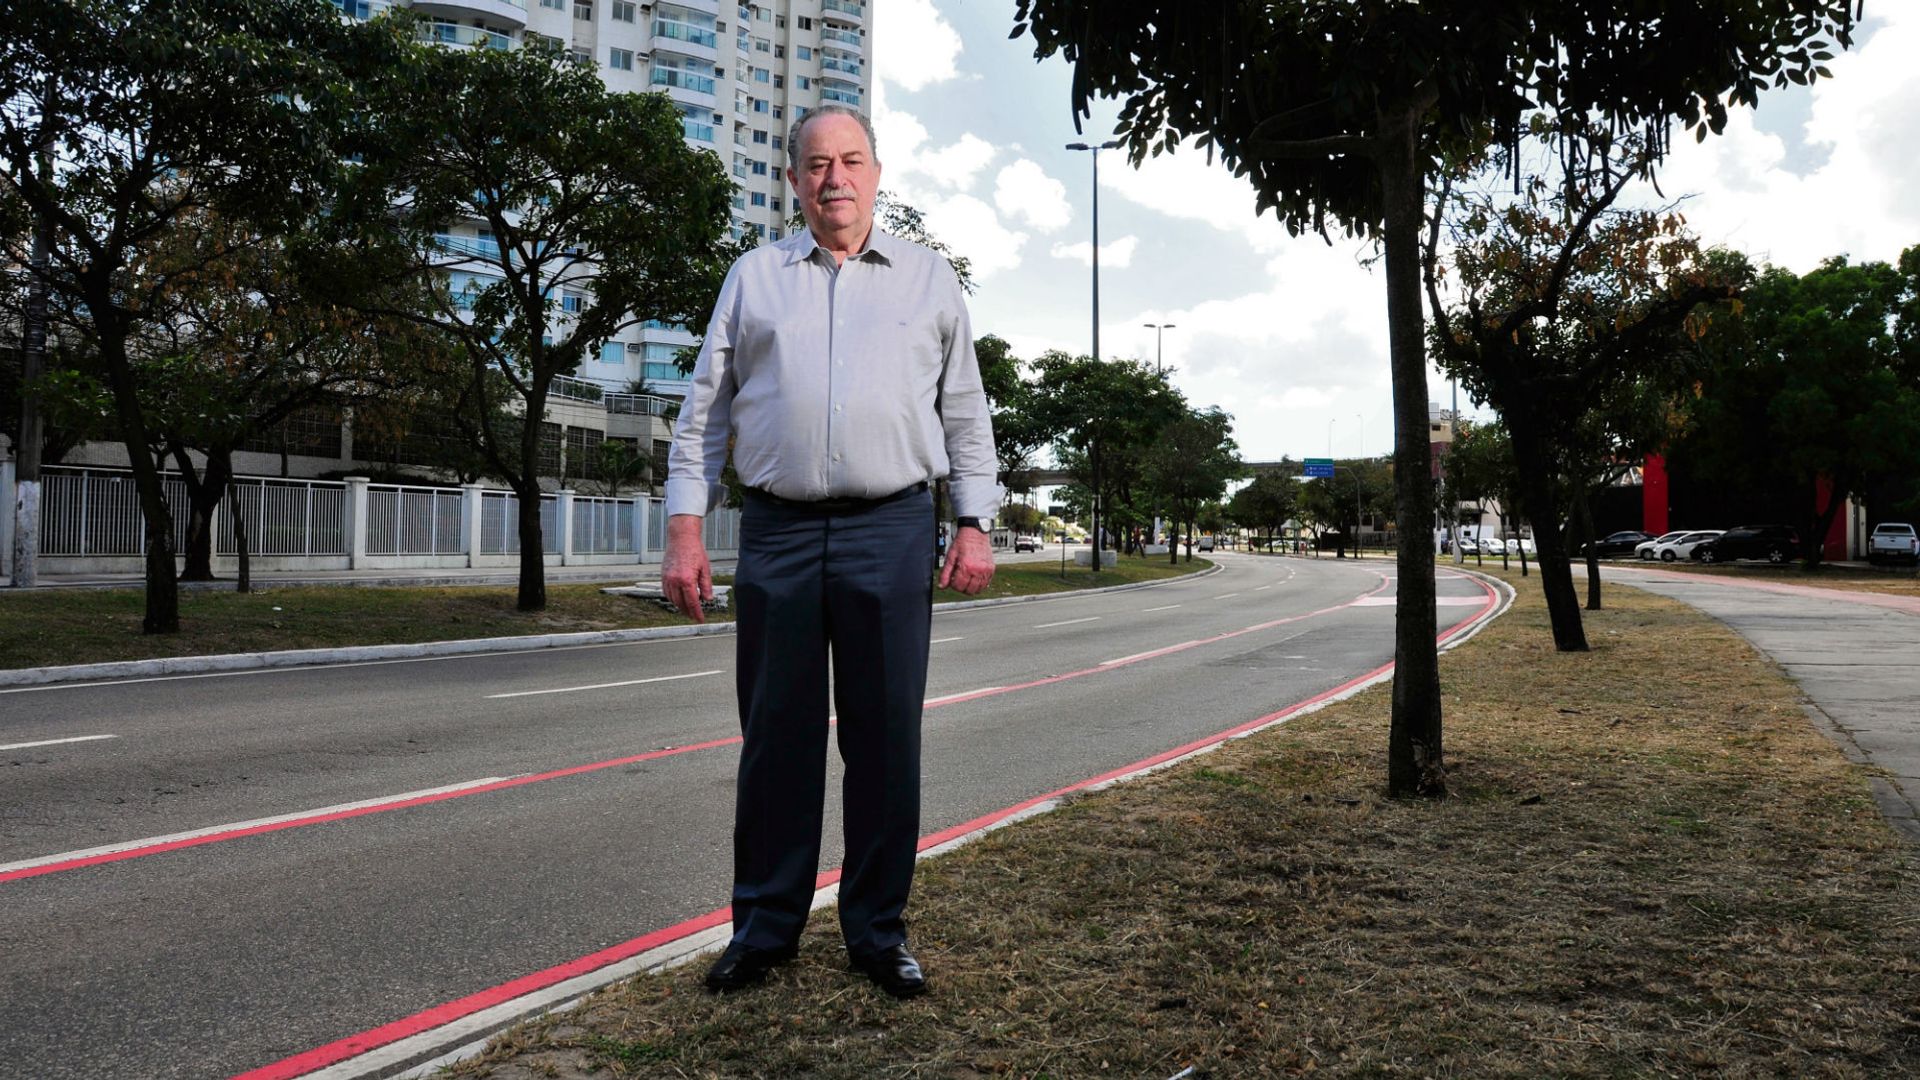 O arquiteto Jolindo Martins Filho, 73 anos, concebeu o projeto de urbanização da Praia do Suá e Enseada do Suá